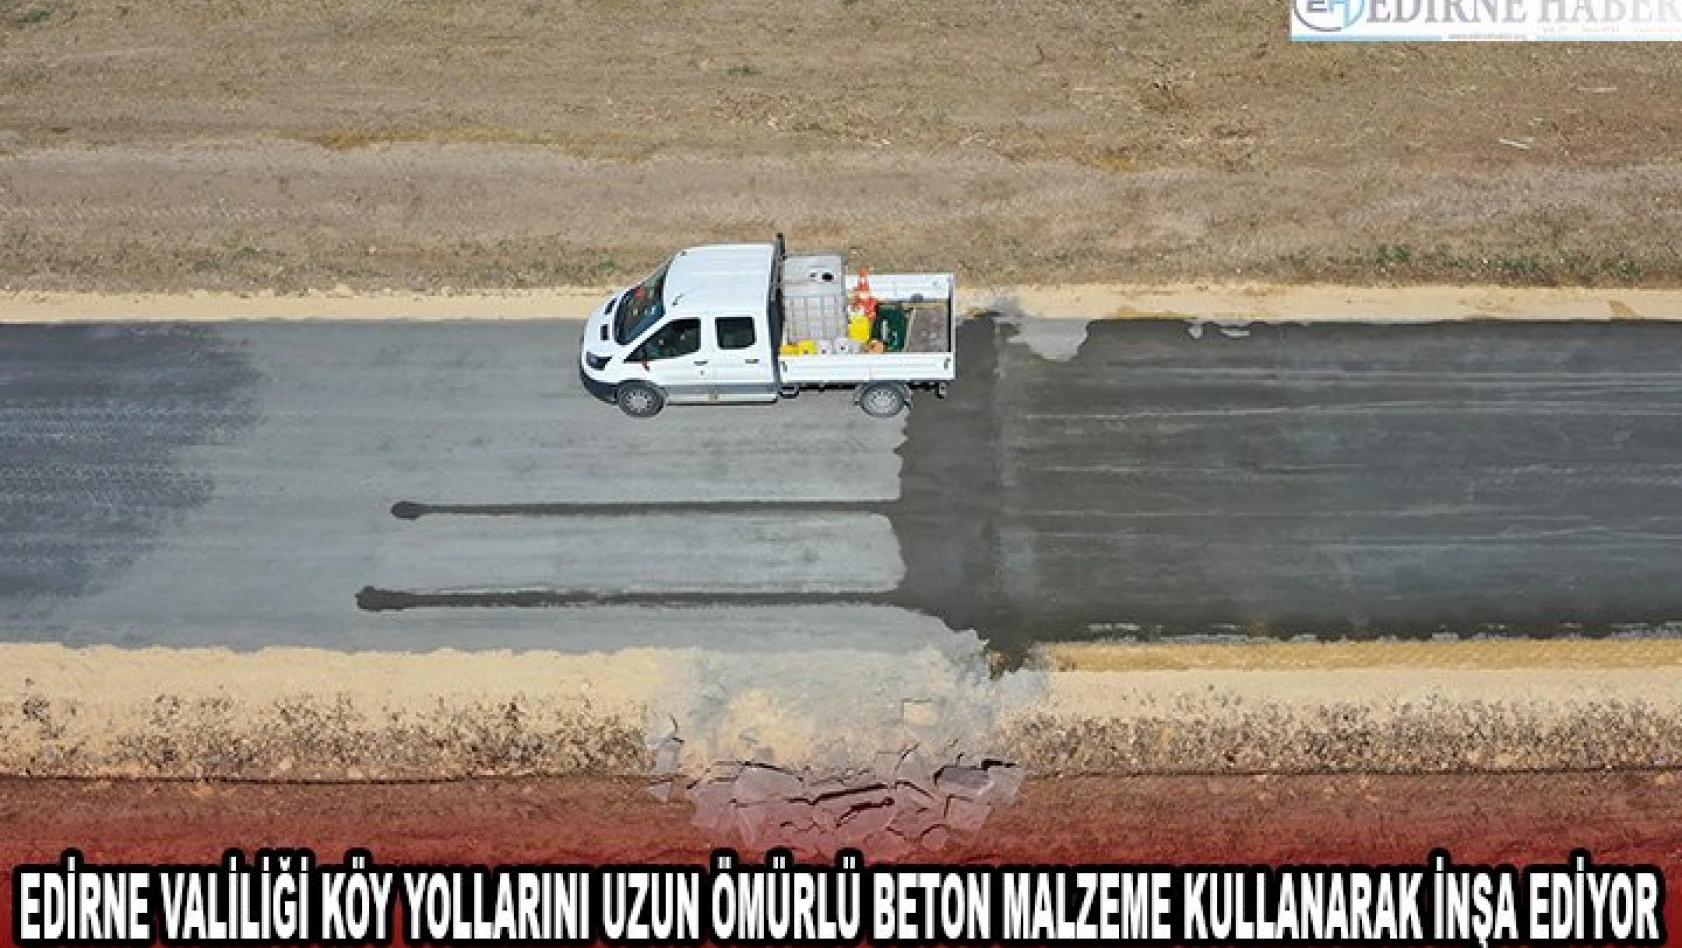 Edirne Valiliği köy yollarını uzun ömürlü beton malzeme kullanarak inşa ediyor